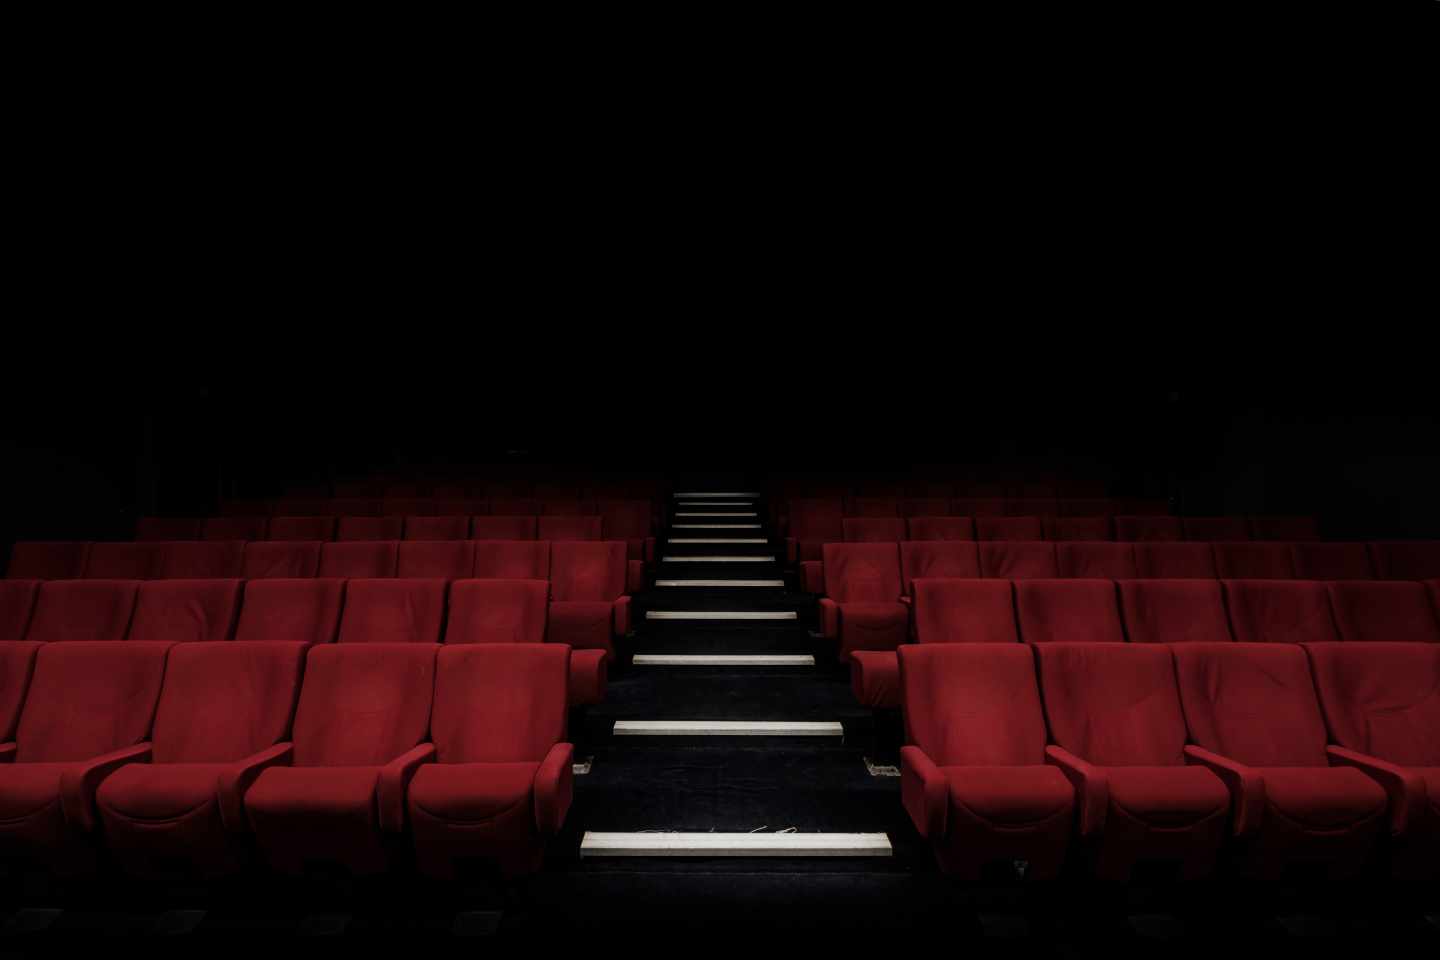 Solo la mitad de los cines han bajado el precio de las entradas